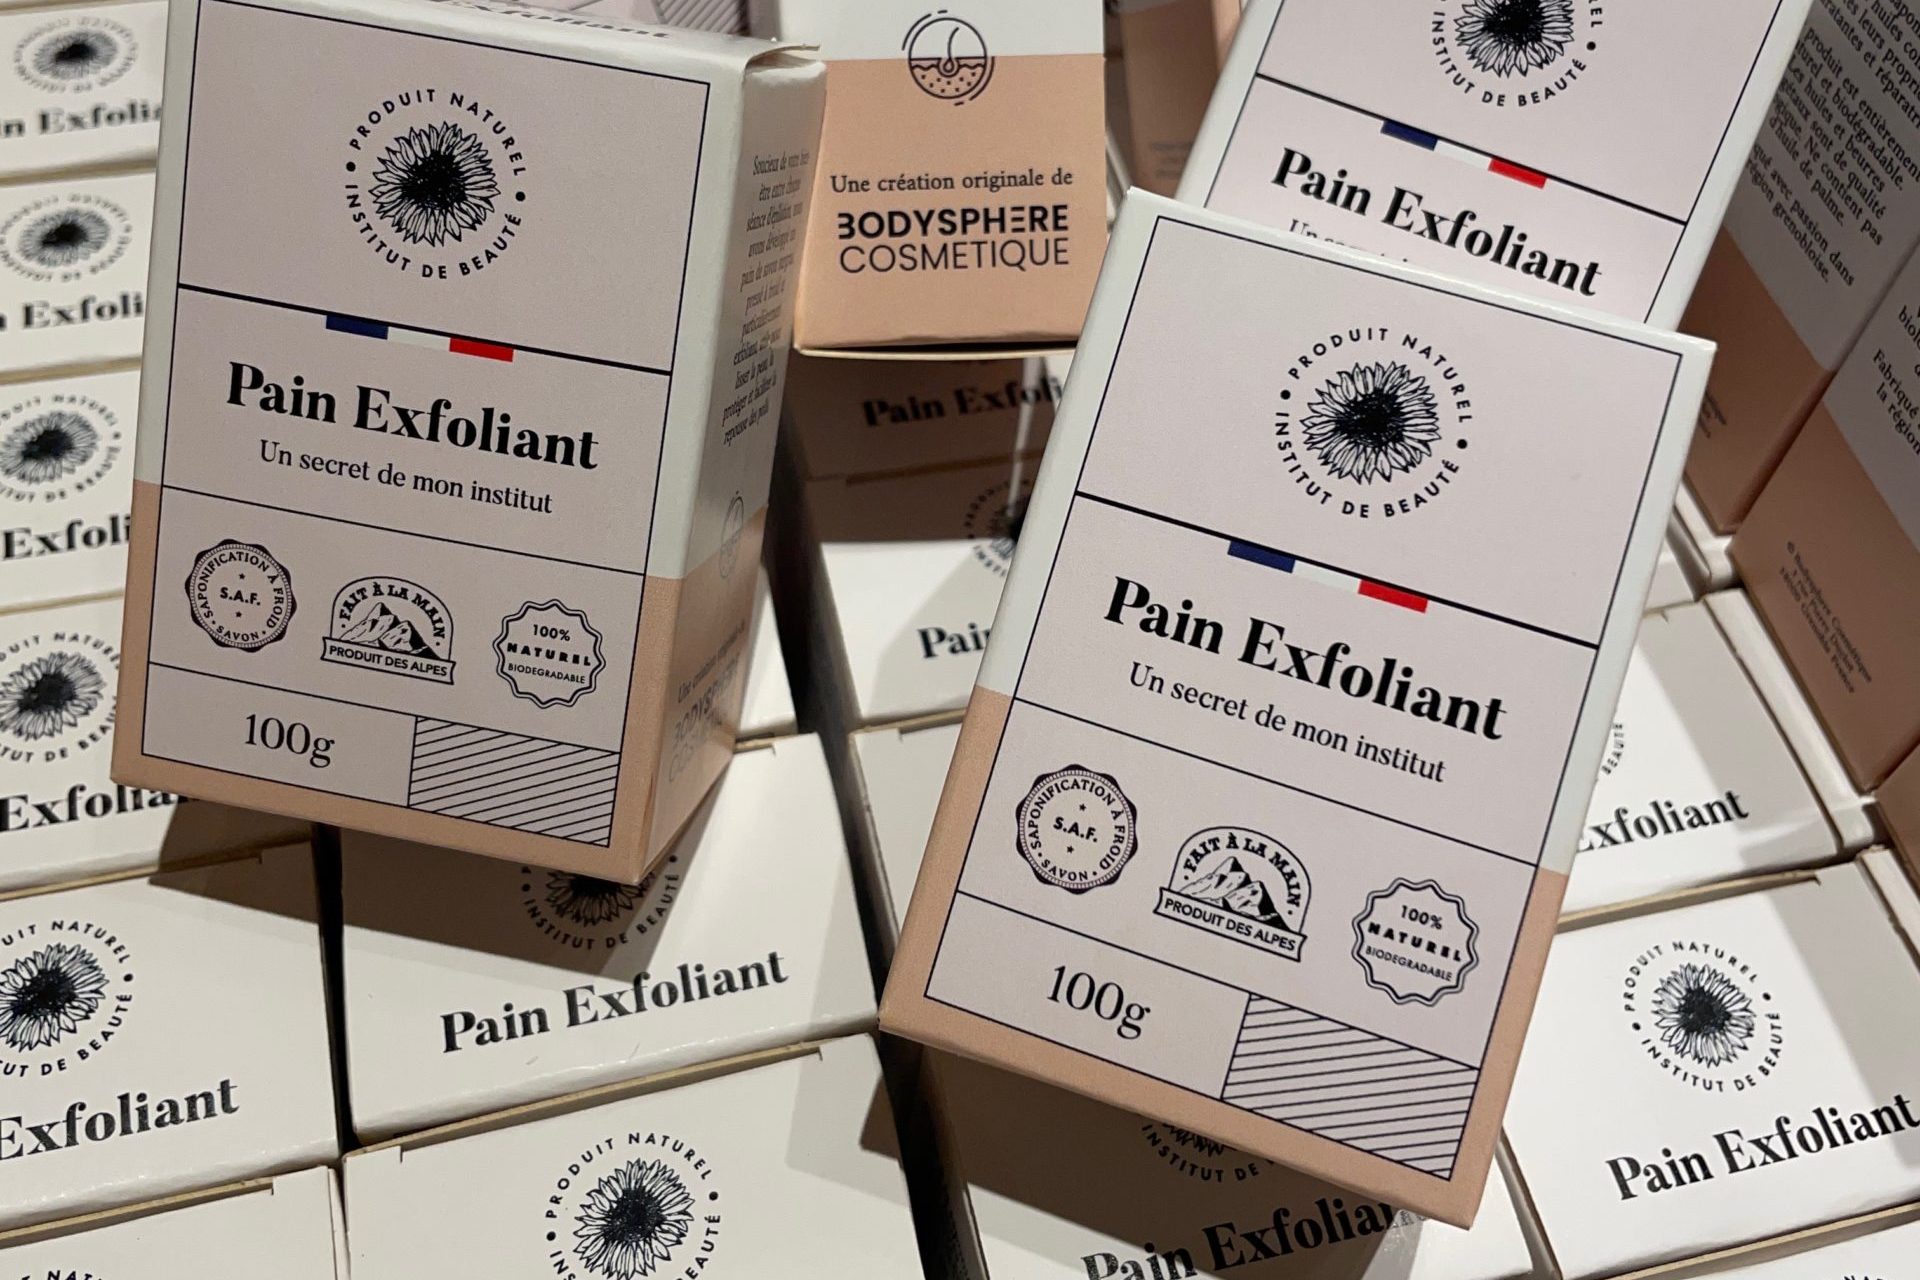 Pain exfoliant